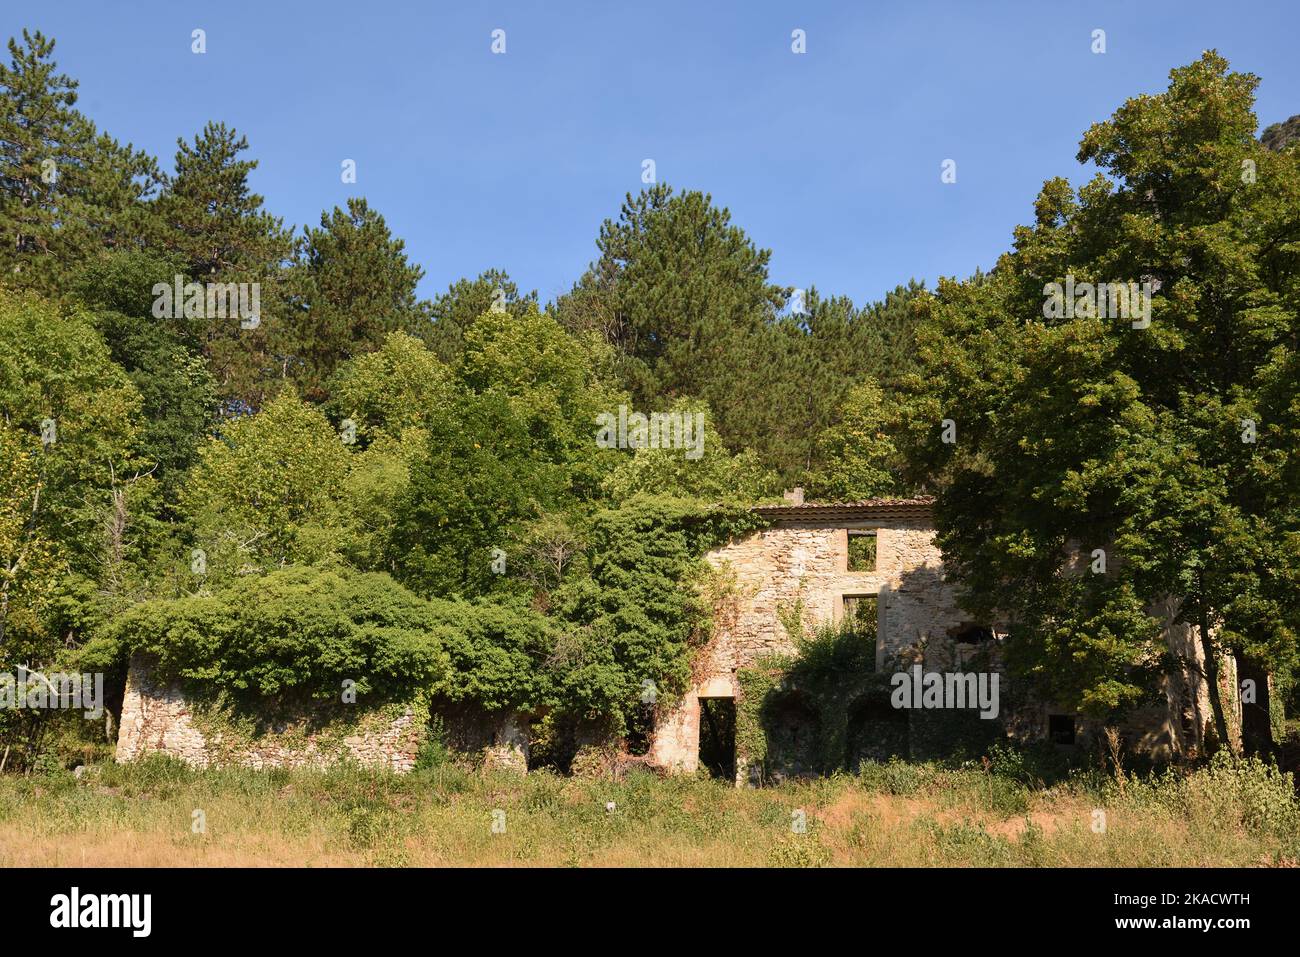 Ferme de Fuoc abandonnée, ferme de Fuoc, dans la forêt de Saou, région de Saou Drôme Provence France Banque D'Images